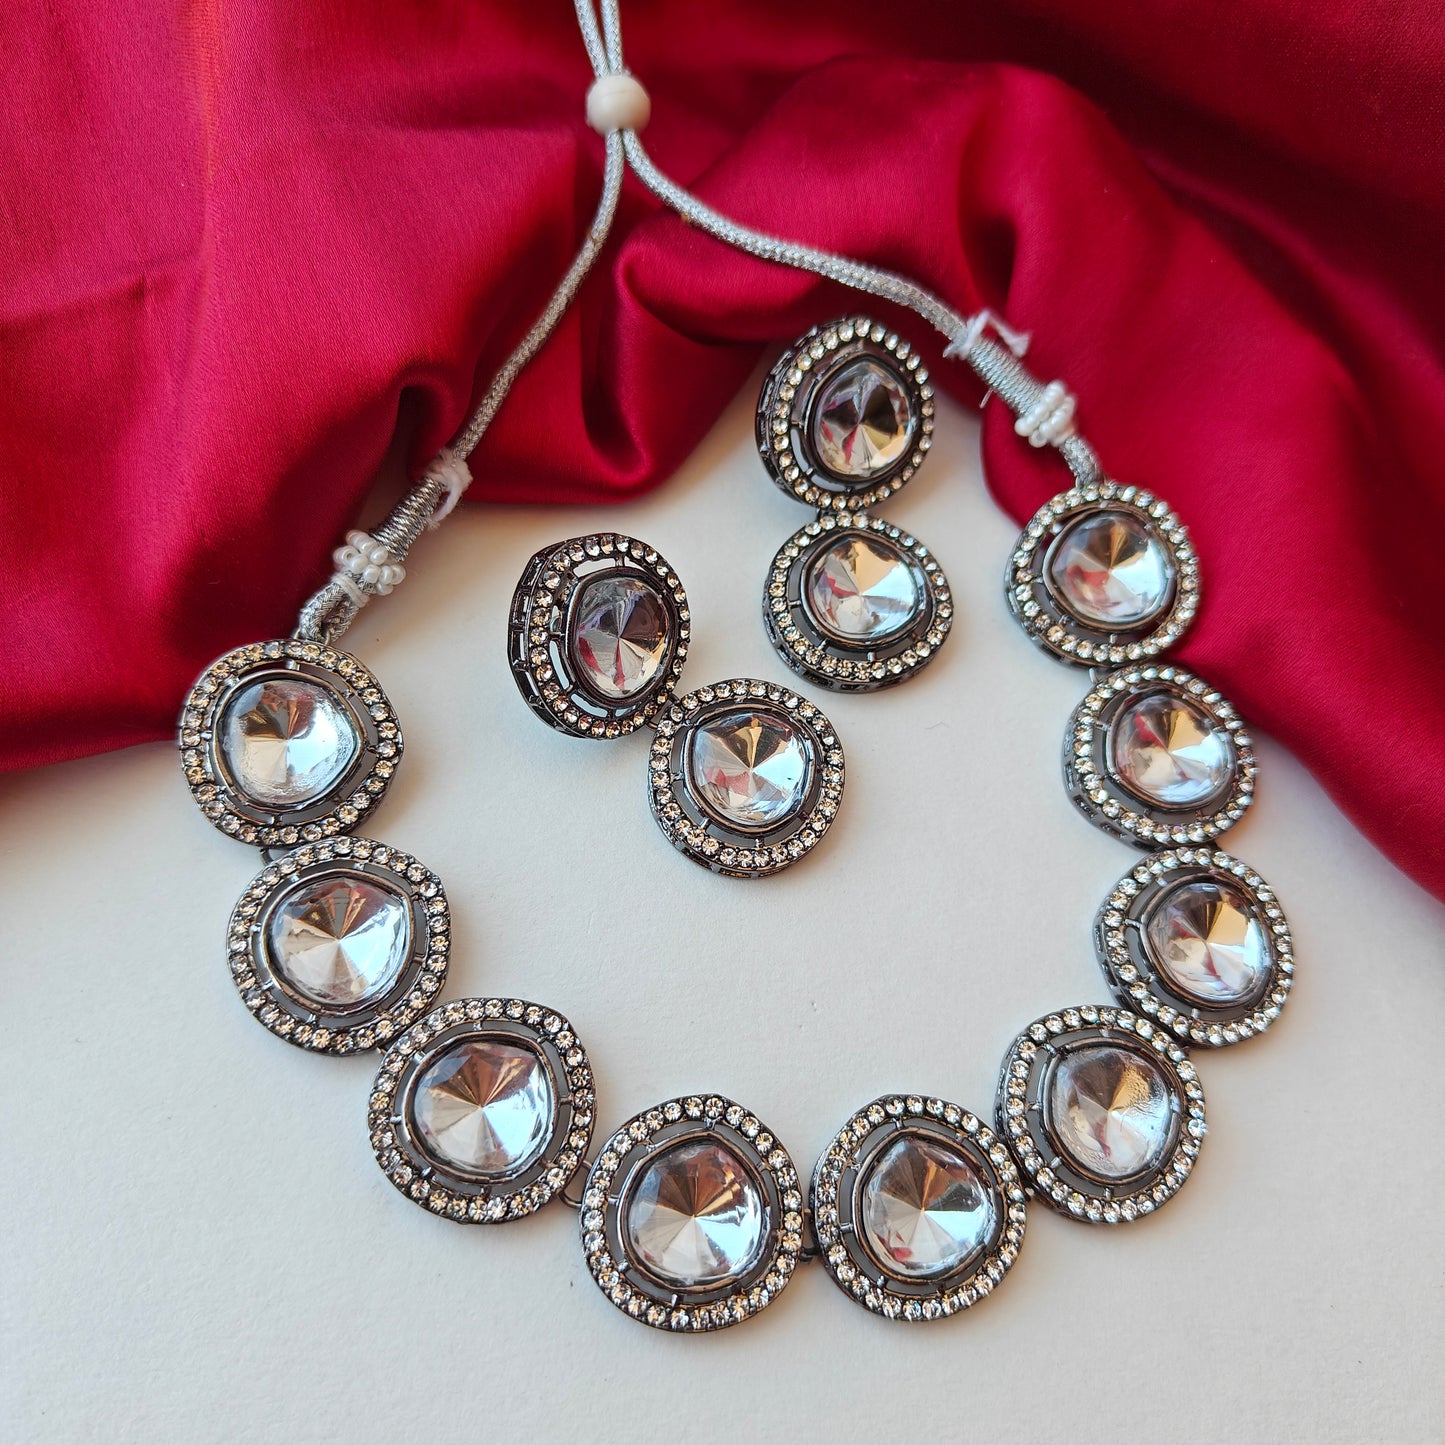 Vipasa Black Metal Polki Look Alike Necklace Set with Earrings